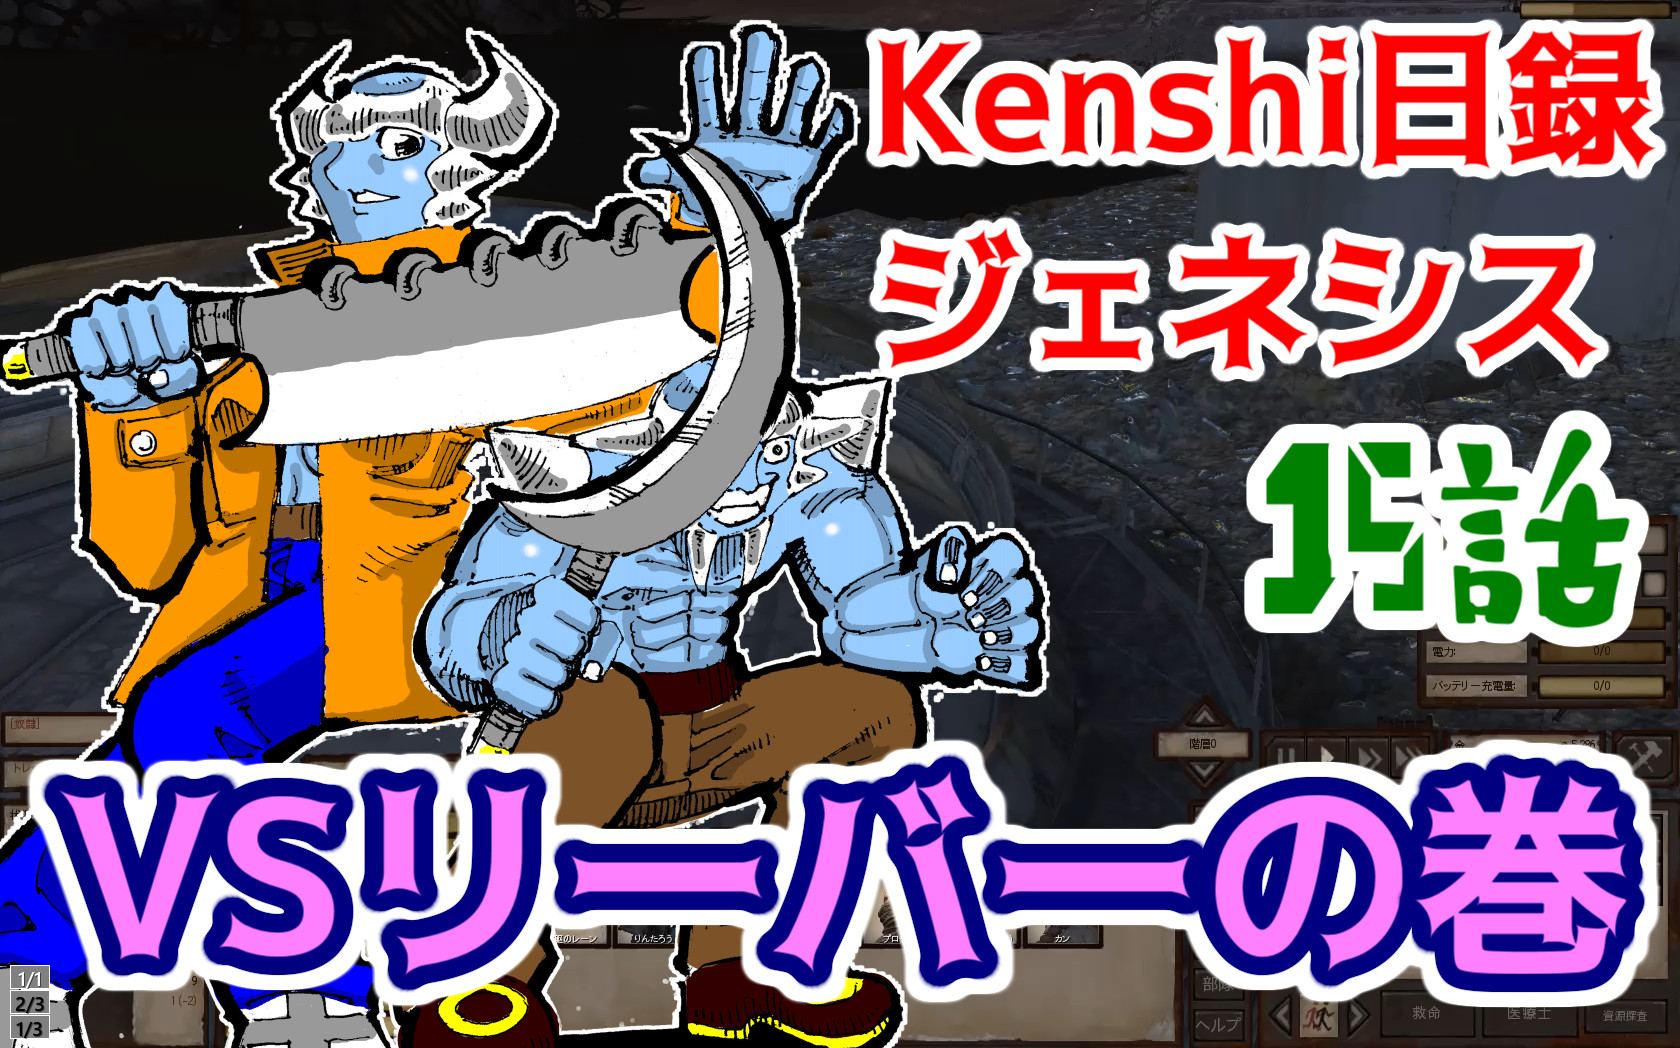 【動画】Kenshi日録ジェネシス 15話 VSリーバーの巻【実況プレイ】